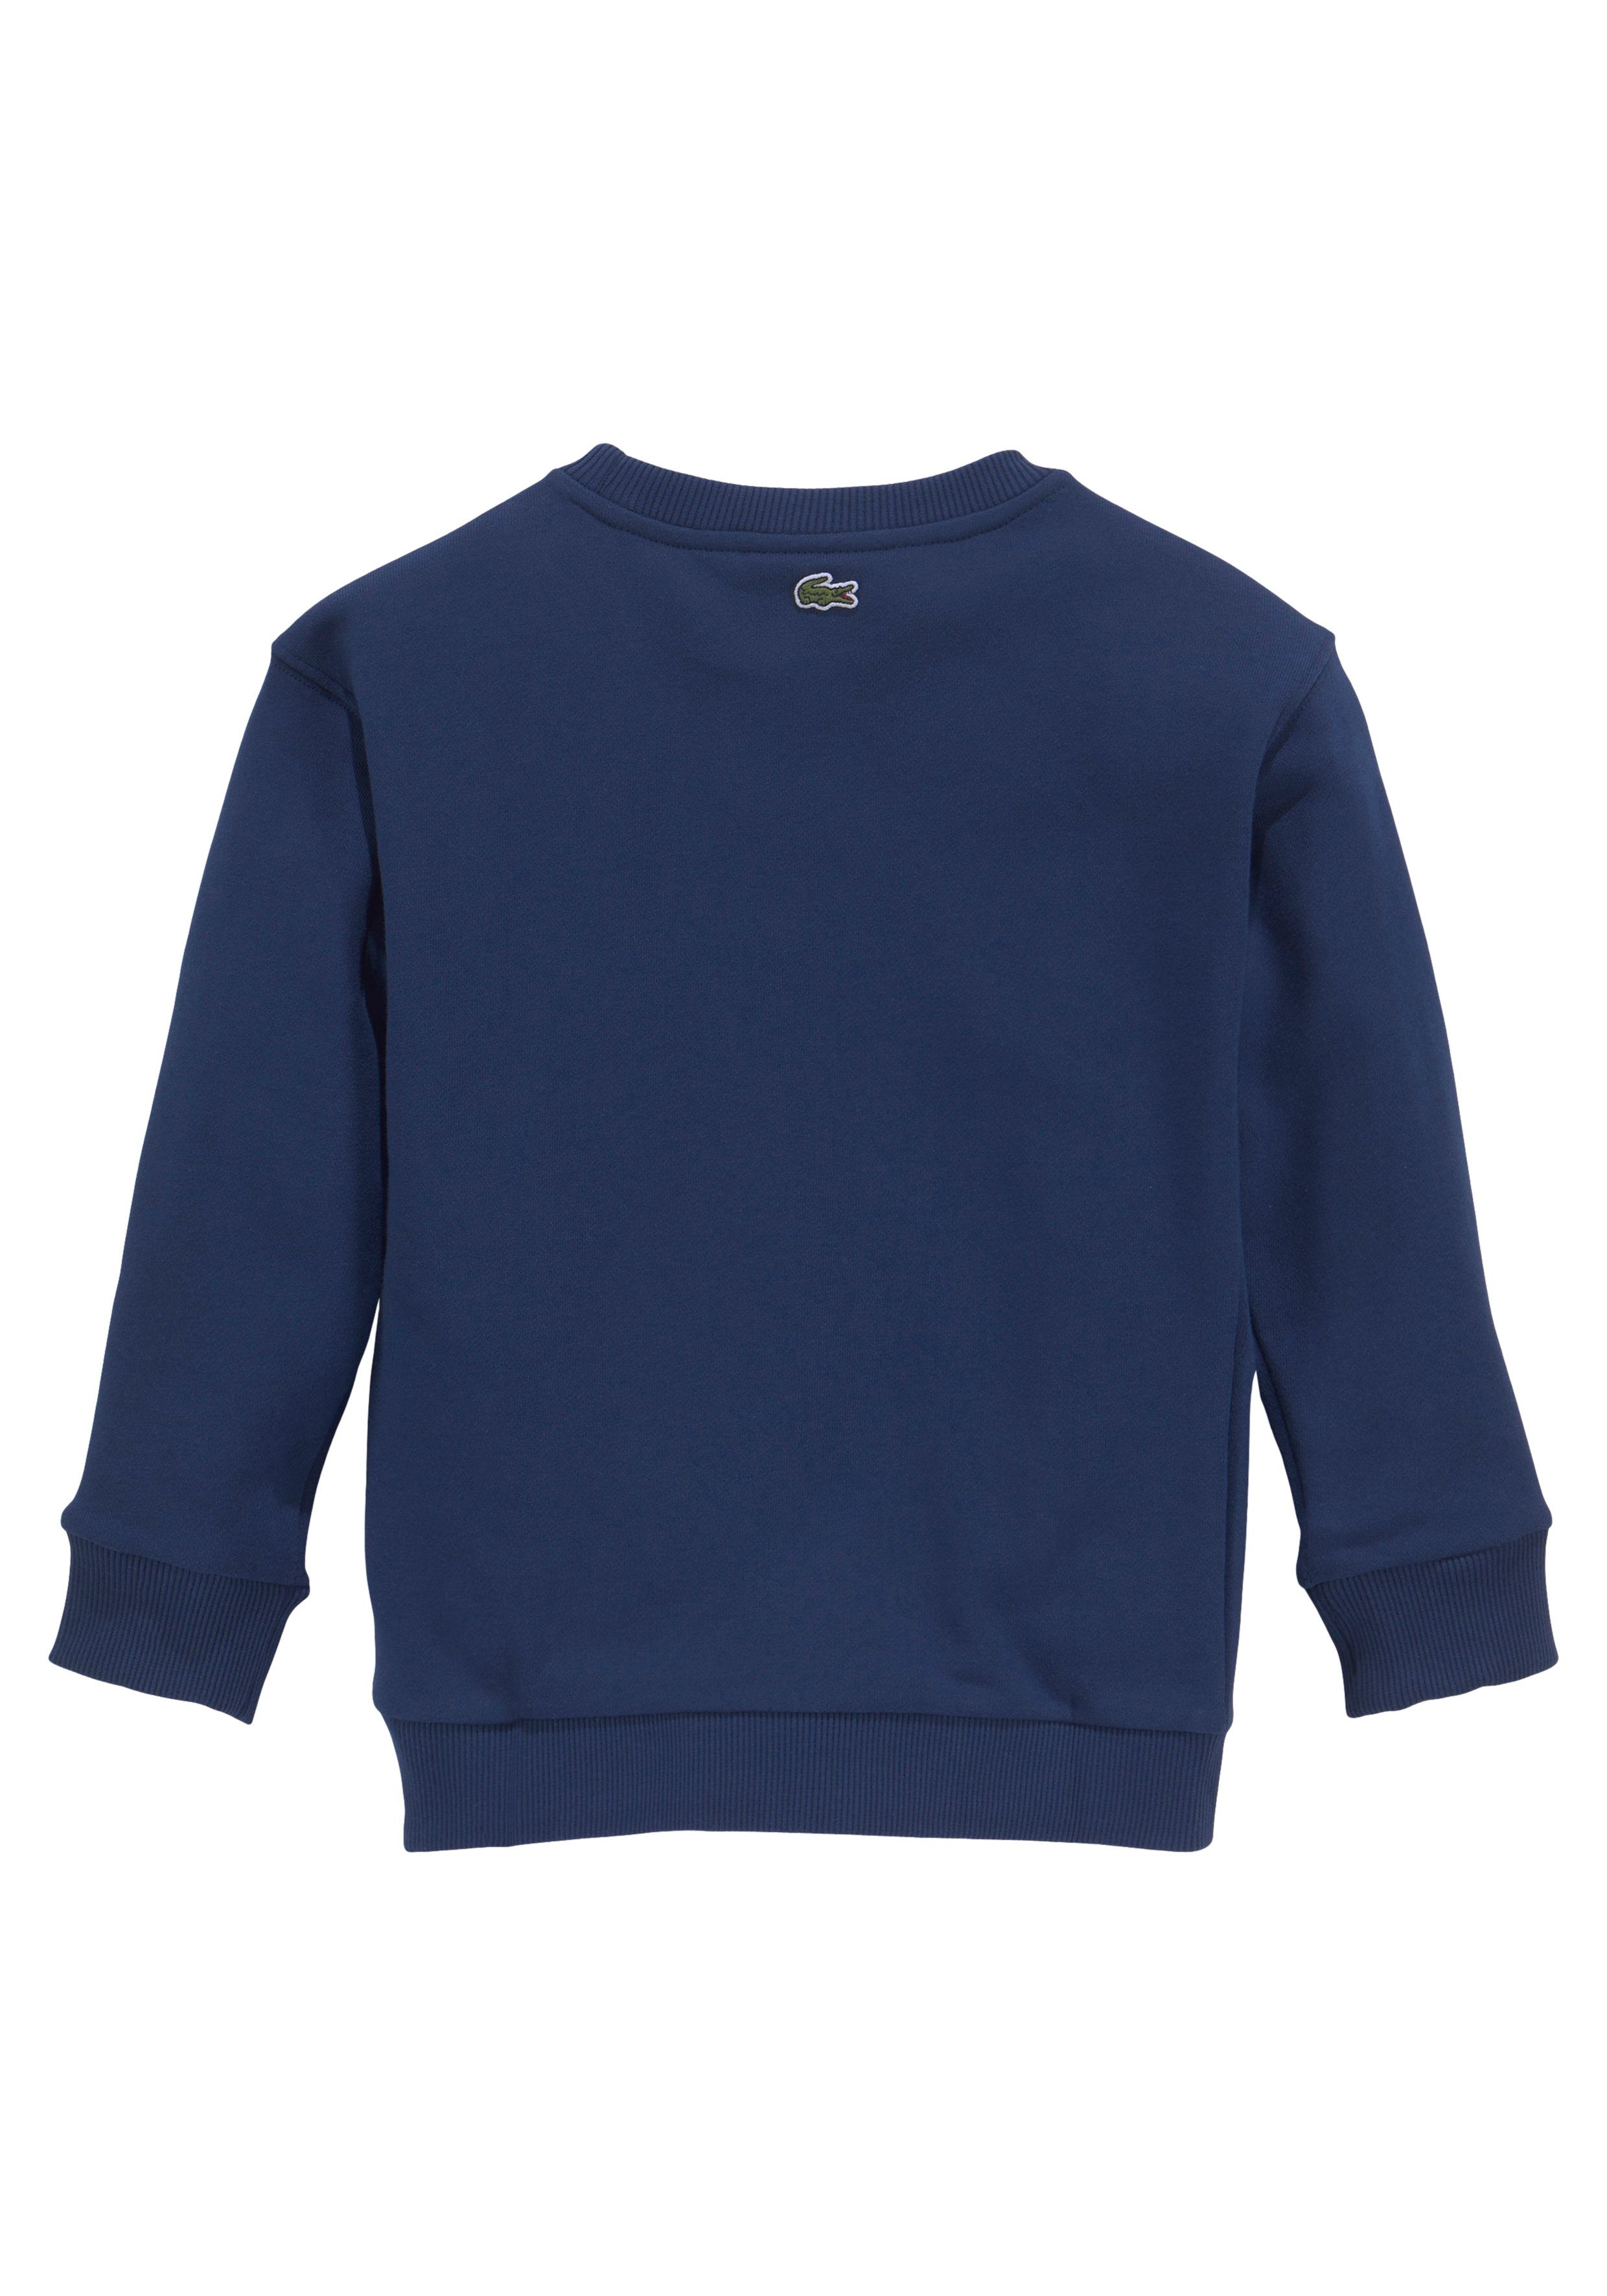 Lacoste Sweatshirt Kinder auf Junior Brust blau der modernem Labeldruck MiniMe,mit Kids